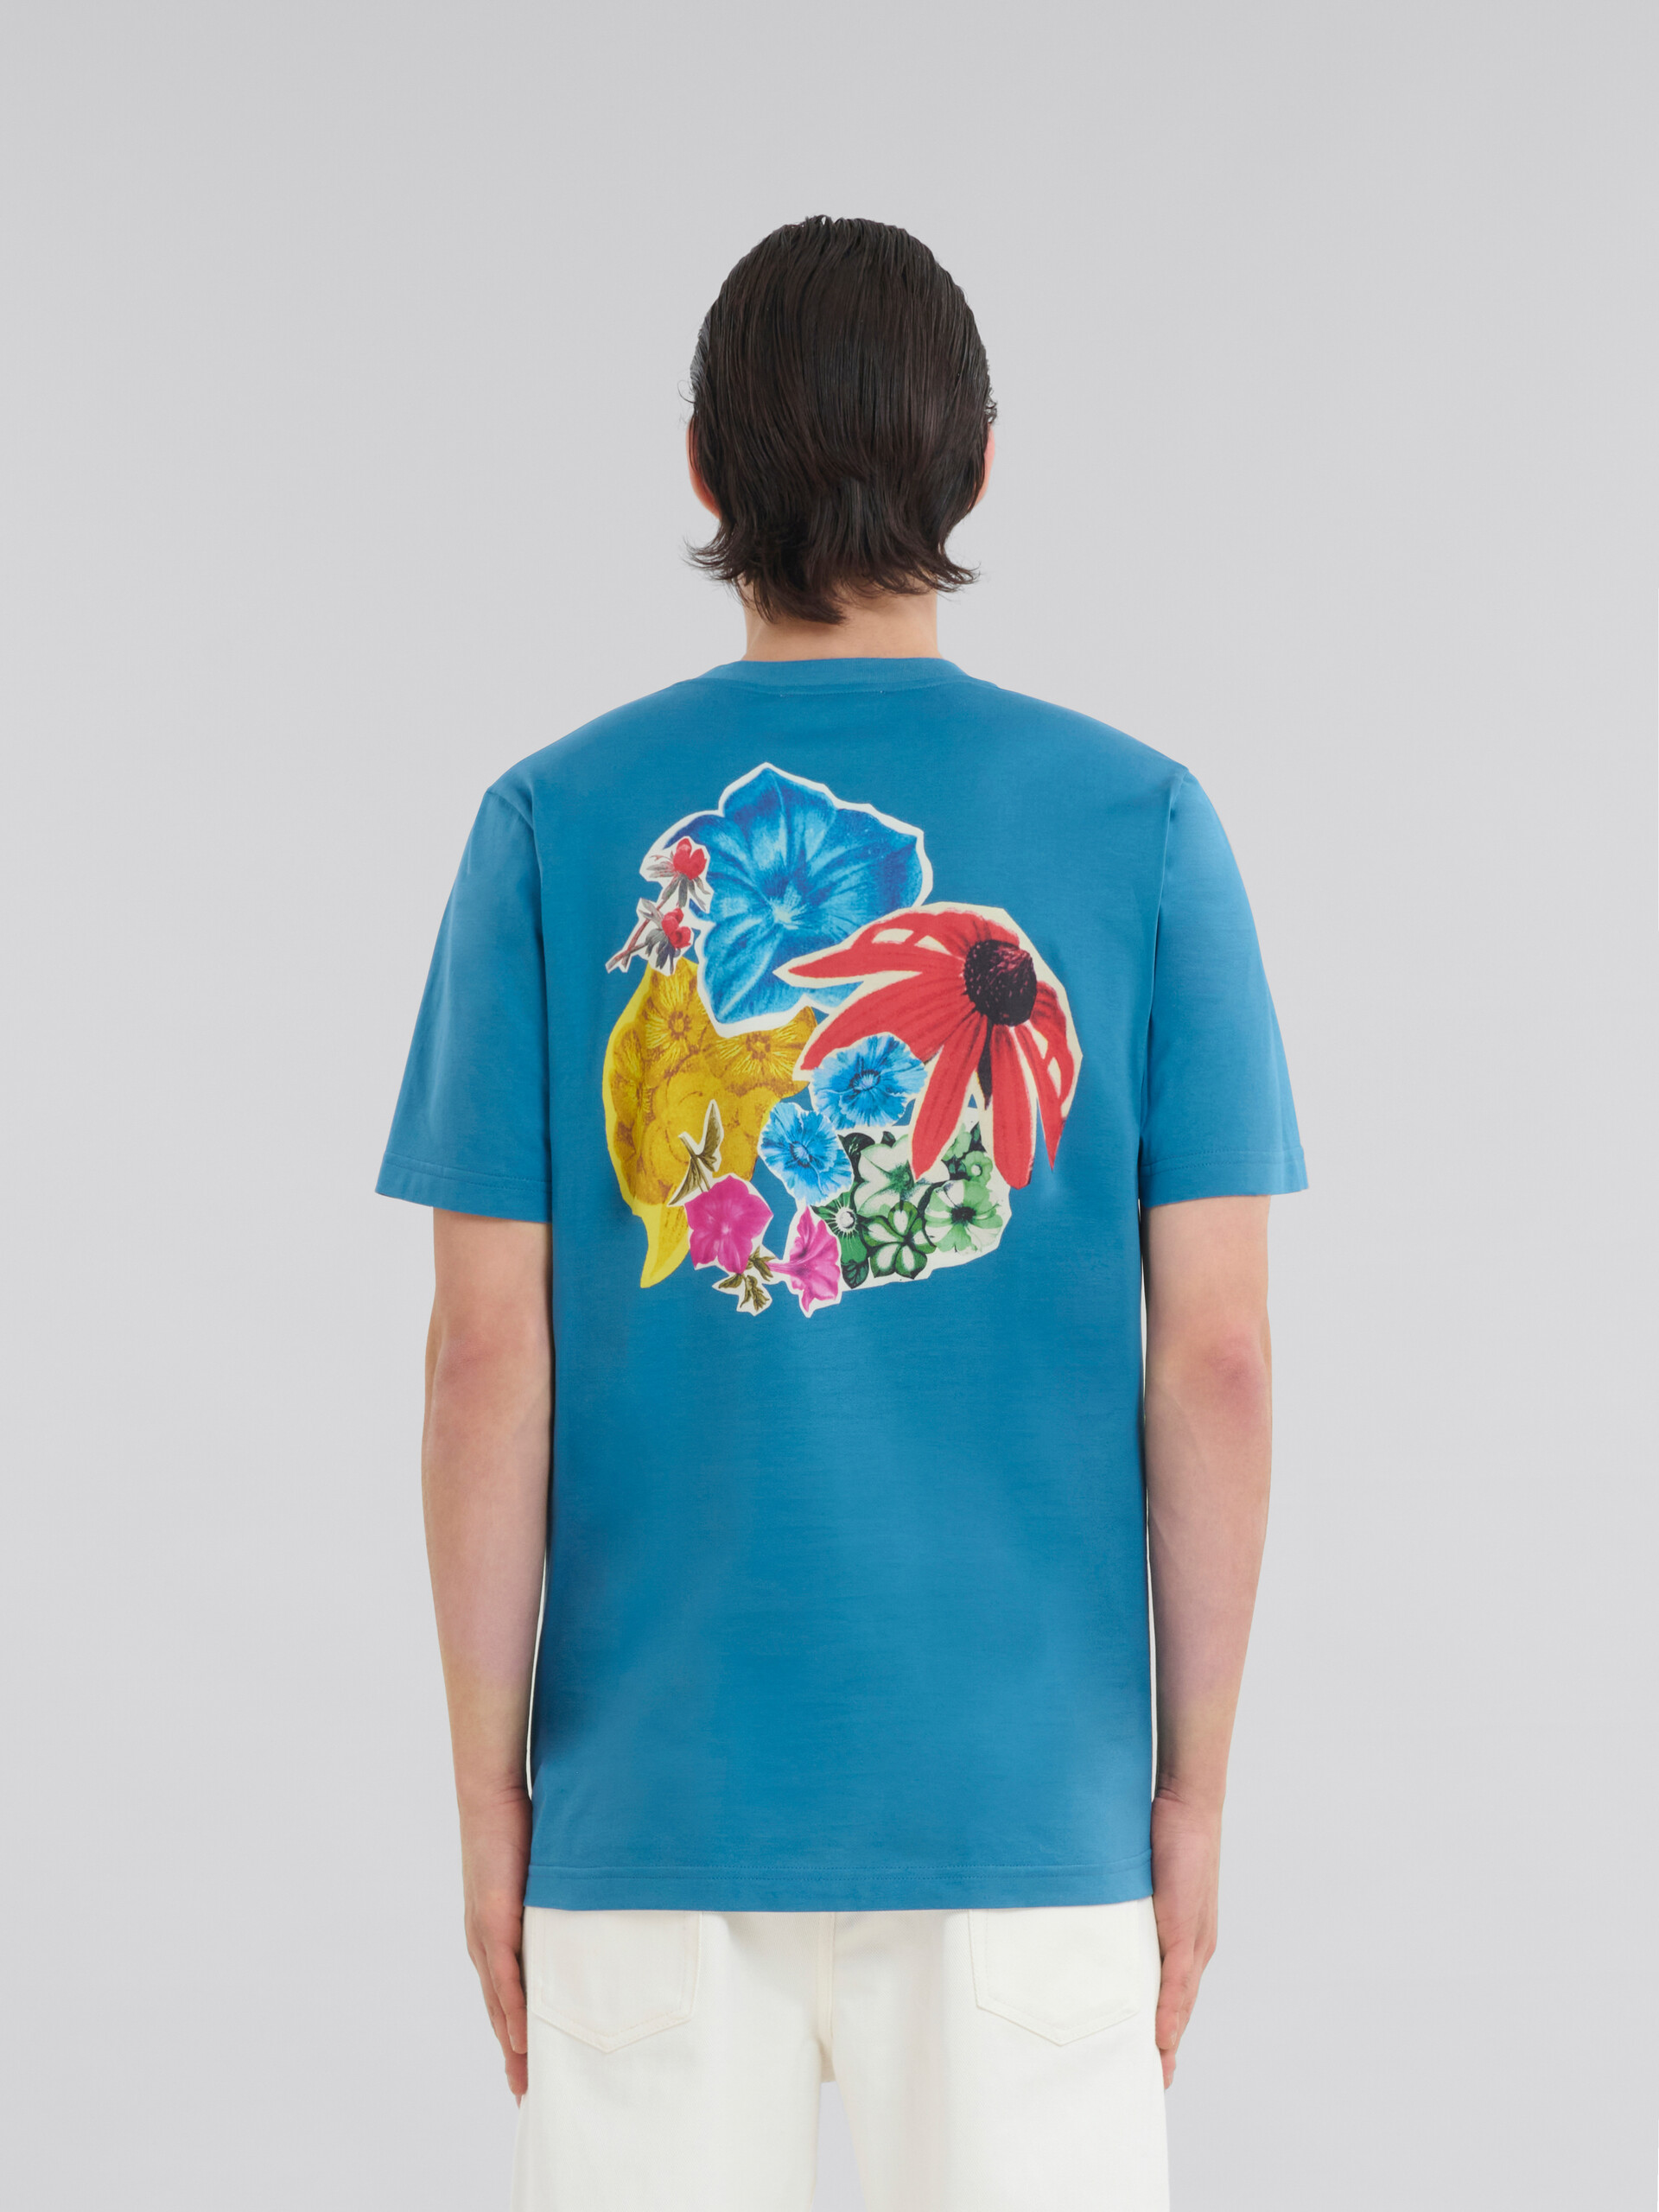 ブルー バック フラワープリント コットン製Tシャツ - Tシャツ - Image 3